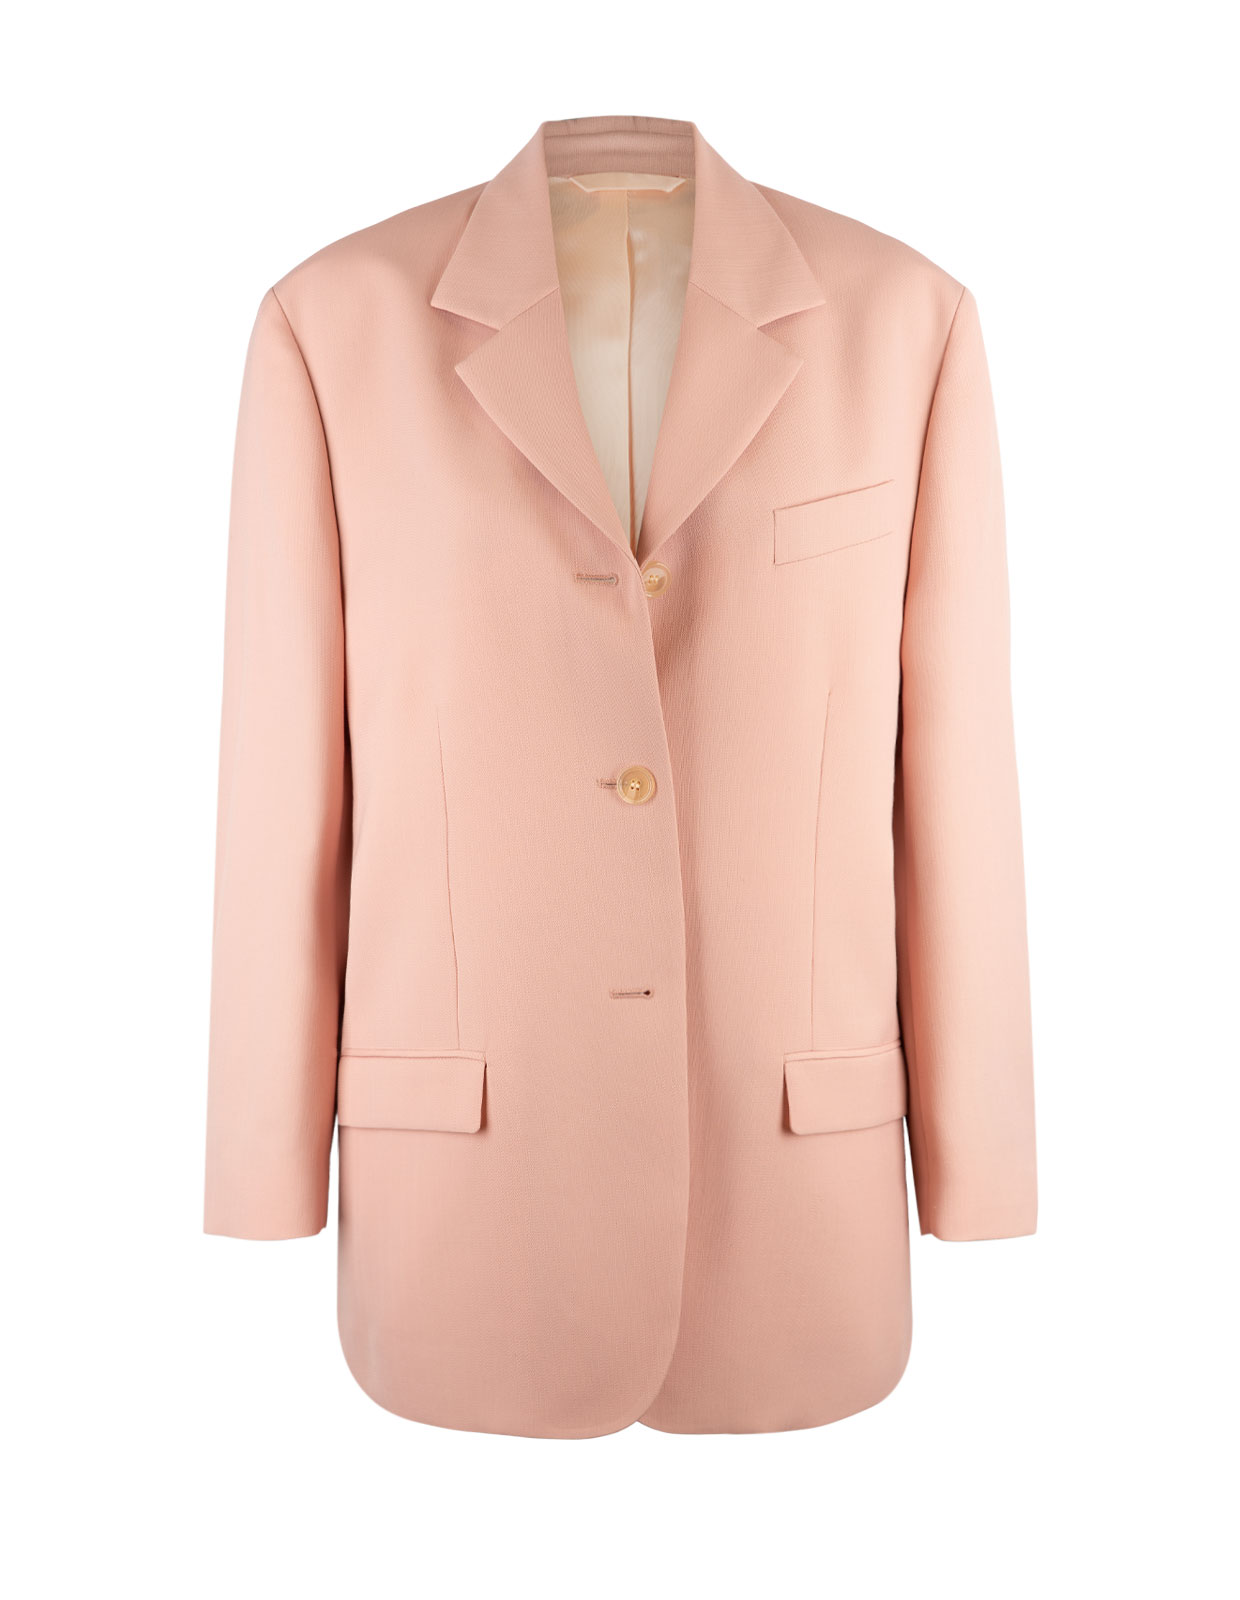 Suit Jacket Powder Pink